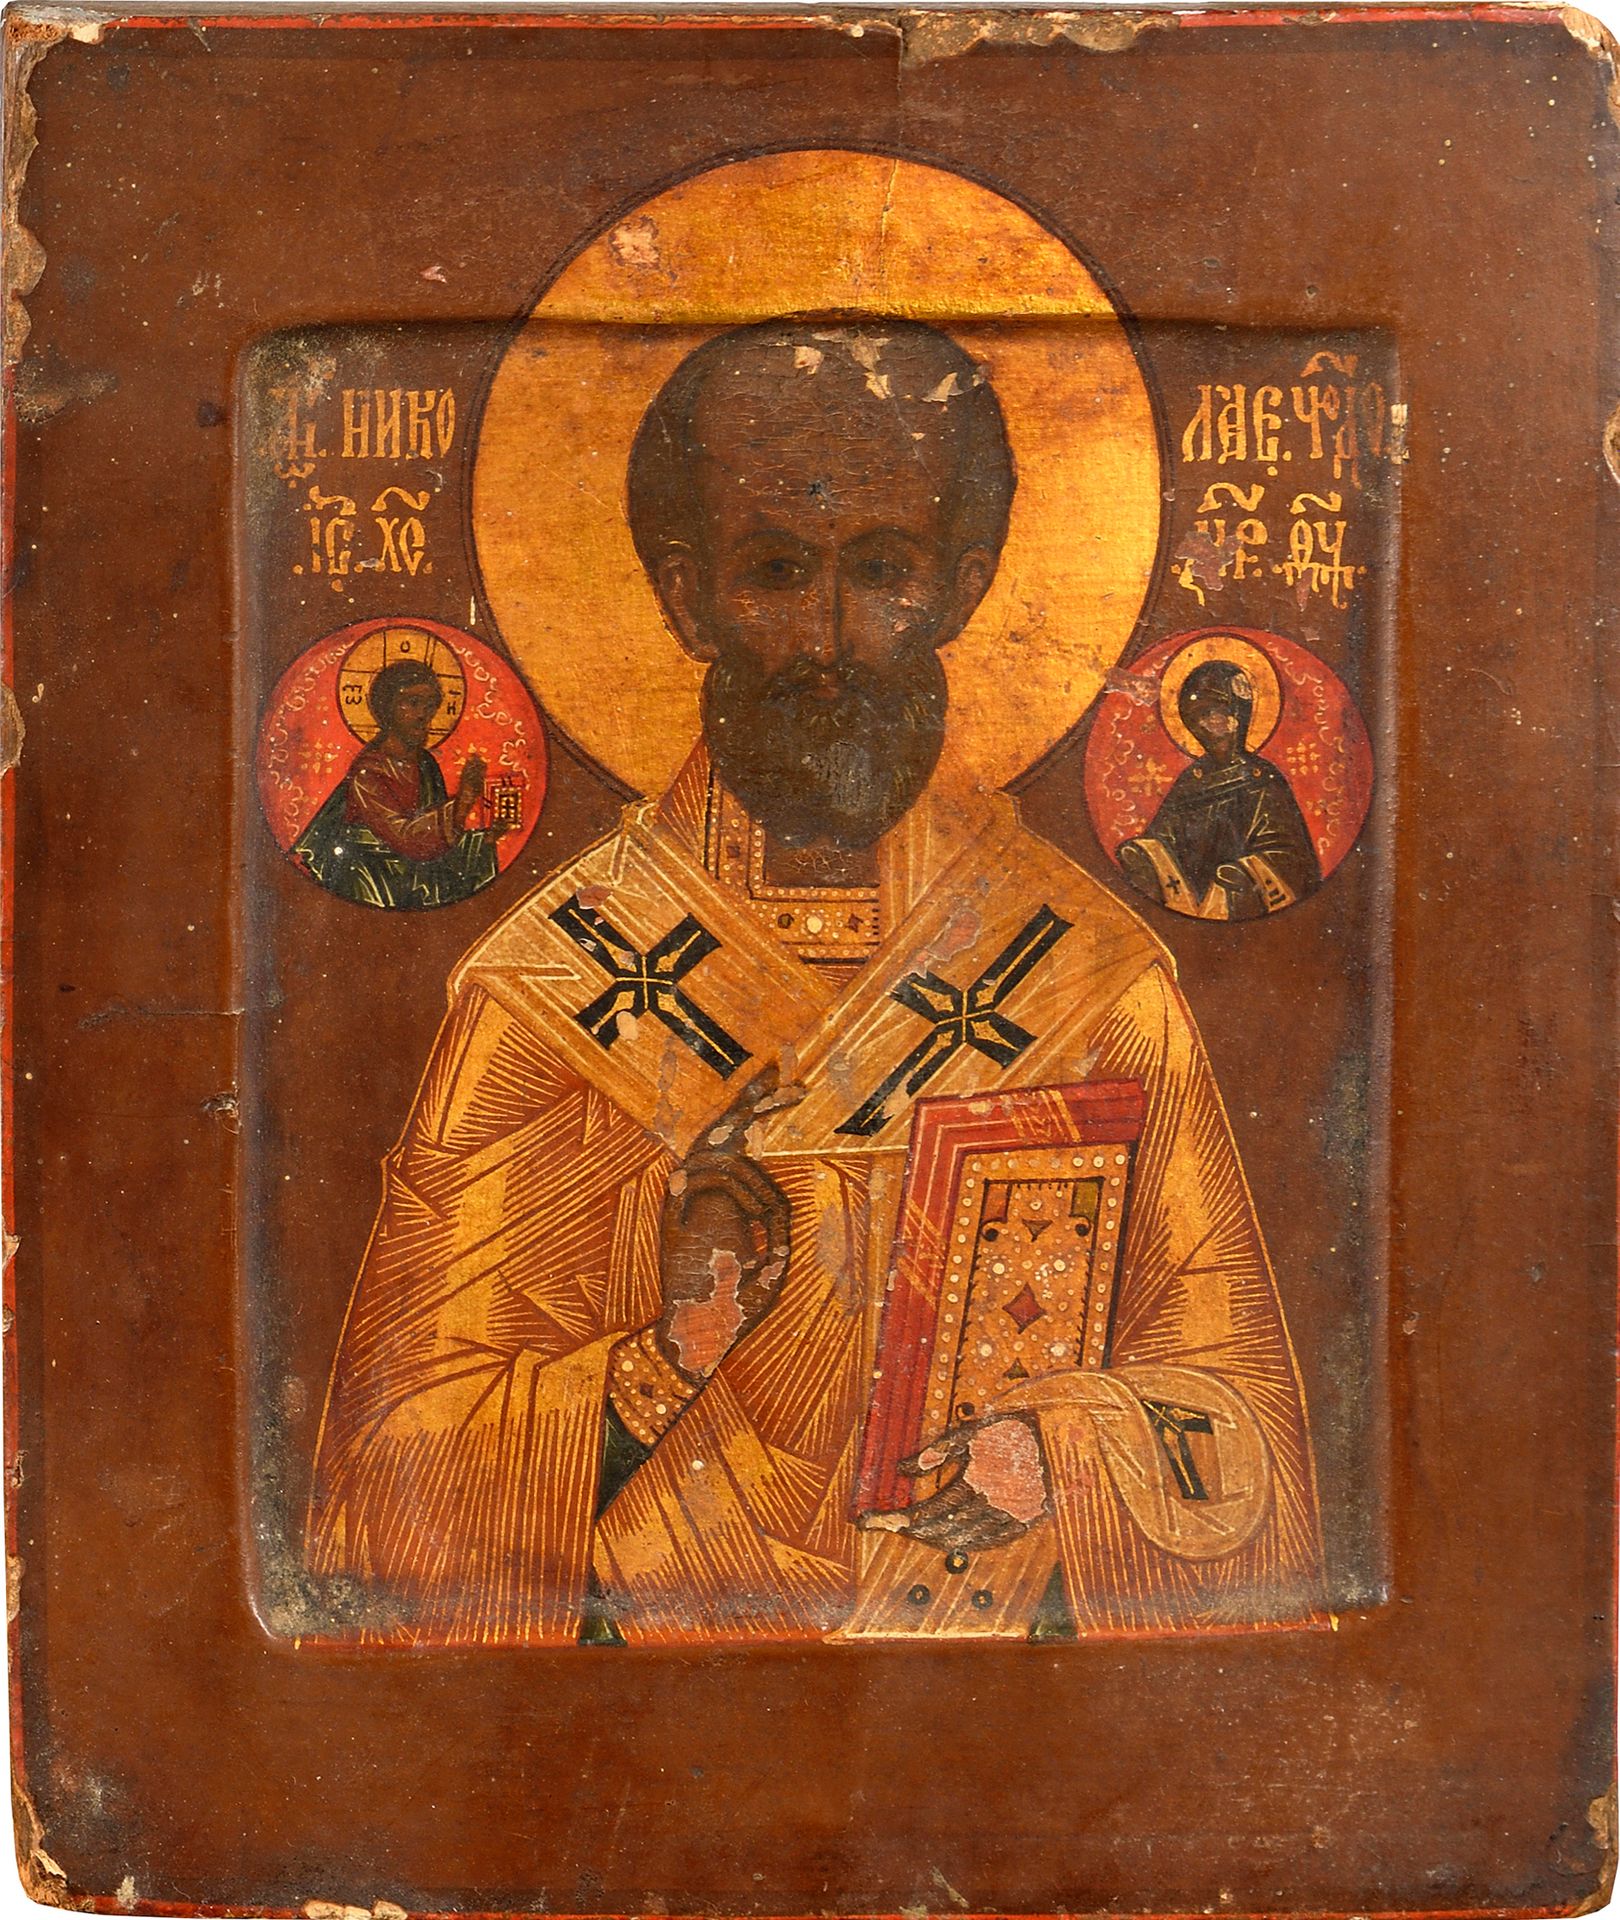 Null LOT von drei Ikonen:

"Heiliger Nikolaus", Tempera auf Holz, 17,5 x 15 cm, &hellip;